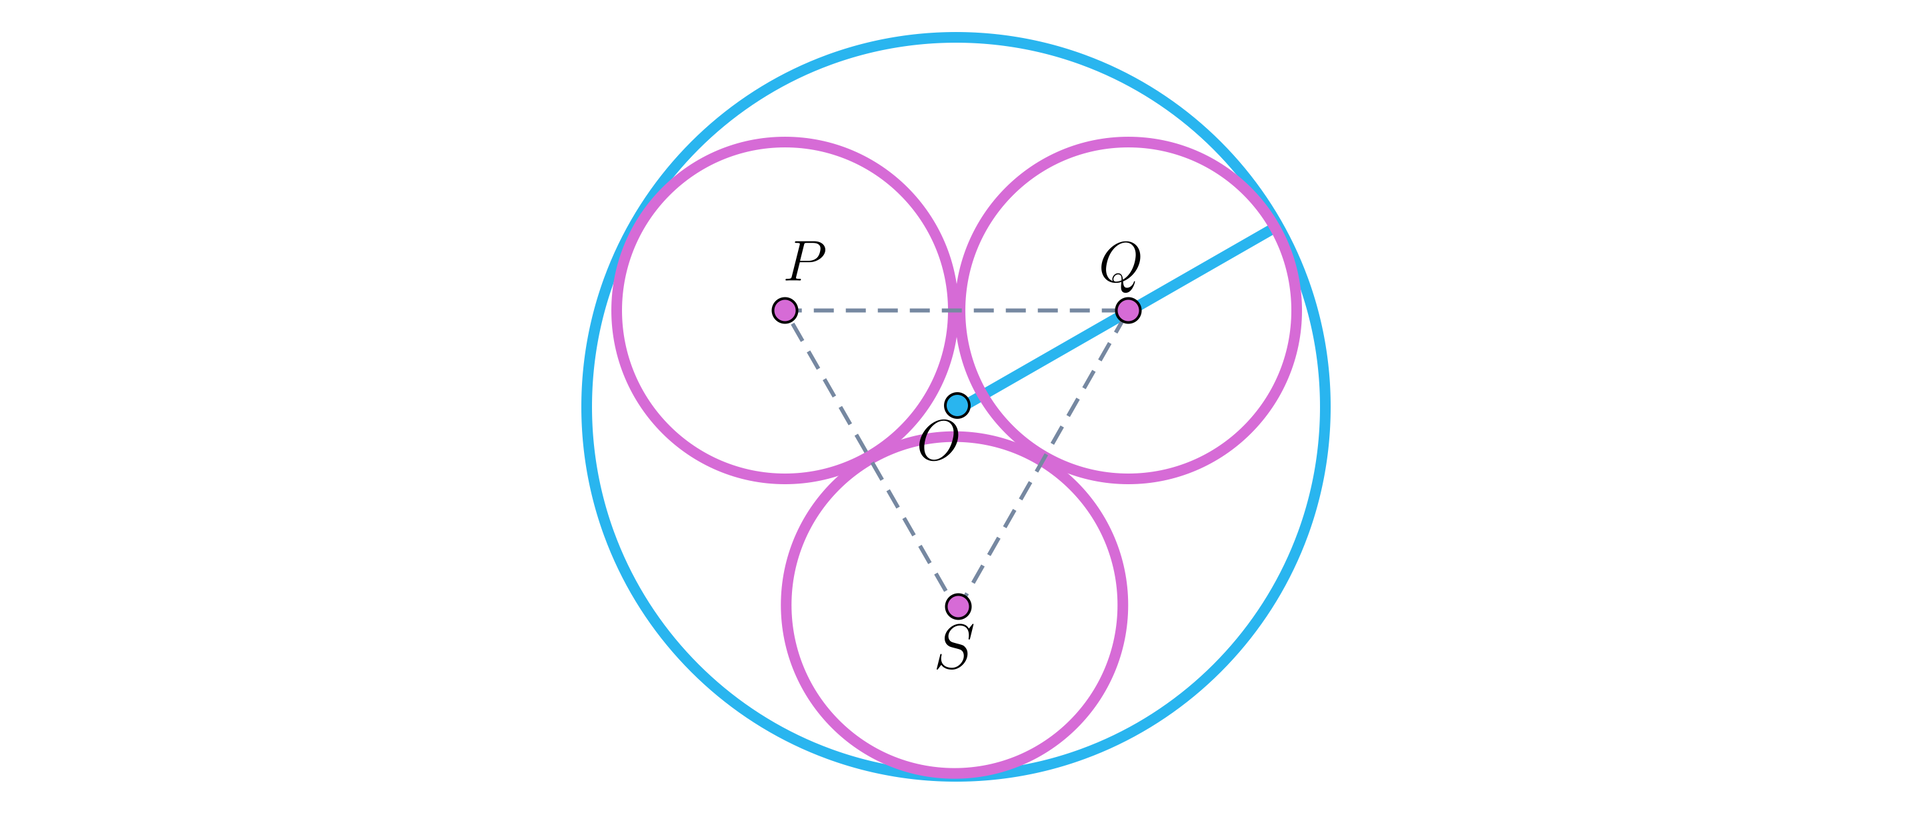 Rysunek przedstawia duży okrąg o środku w punkcie O i trzech mniejszych okręgach o takim samym promieniu, które są styczne wewnętrznie do dużego okręgu i jednocześnie są styczne zewnętrznie parami do siebie nawzajem. Środki małych okręgów znajdują się w punktach: P, Q, S, a pomiędzy nimi linią przerywaną wyrysowano trójkąt. Na rysunku zaznaczono także promień dużego koła, który przechodzi przez punkt Q.